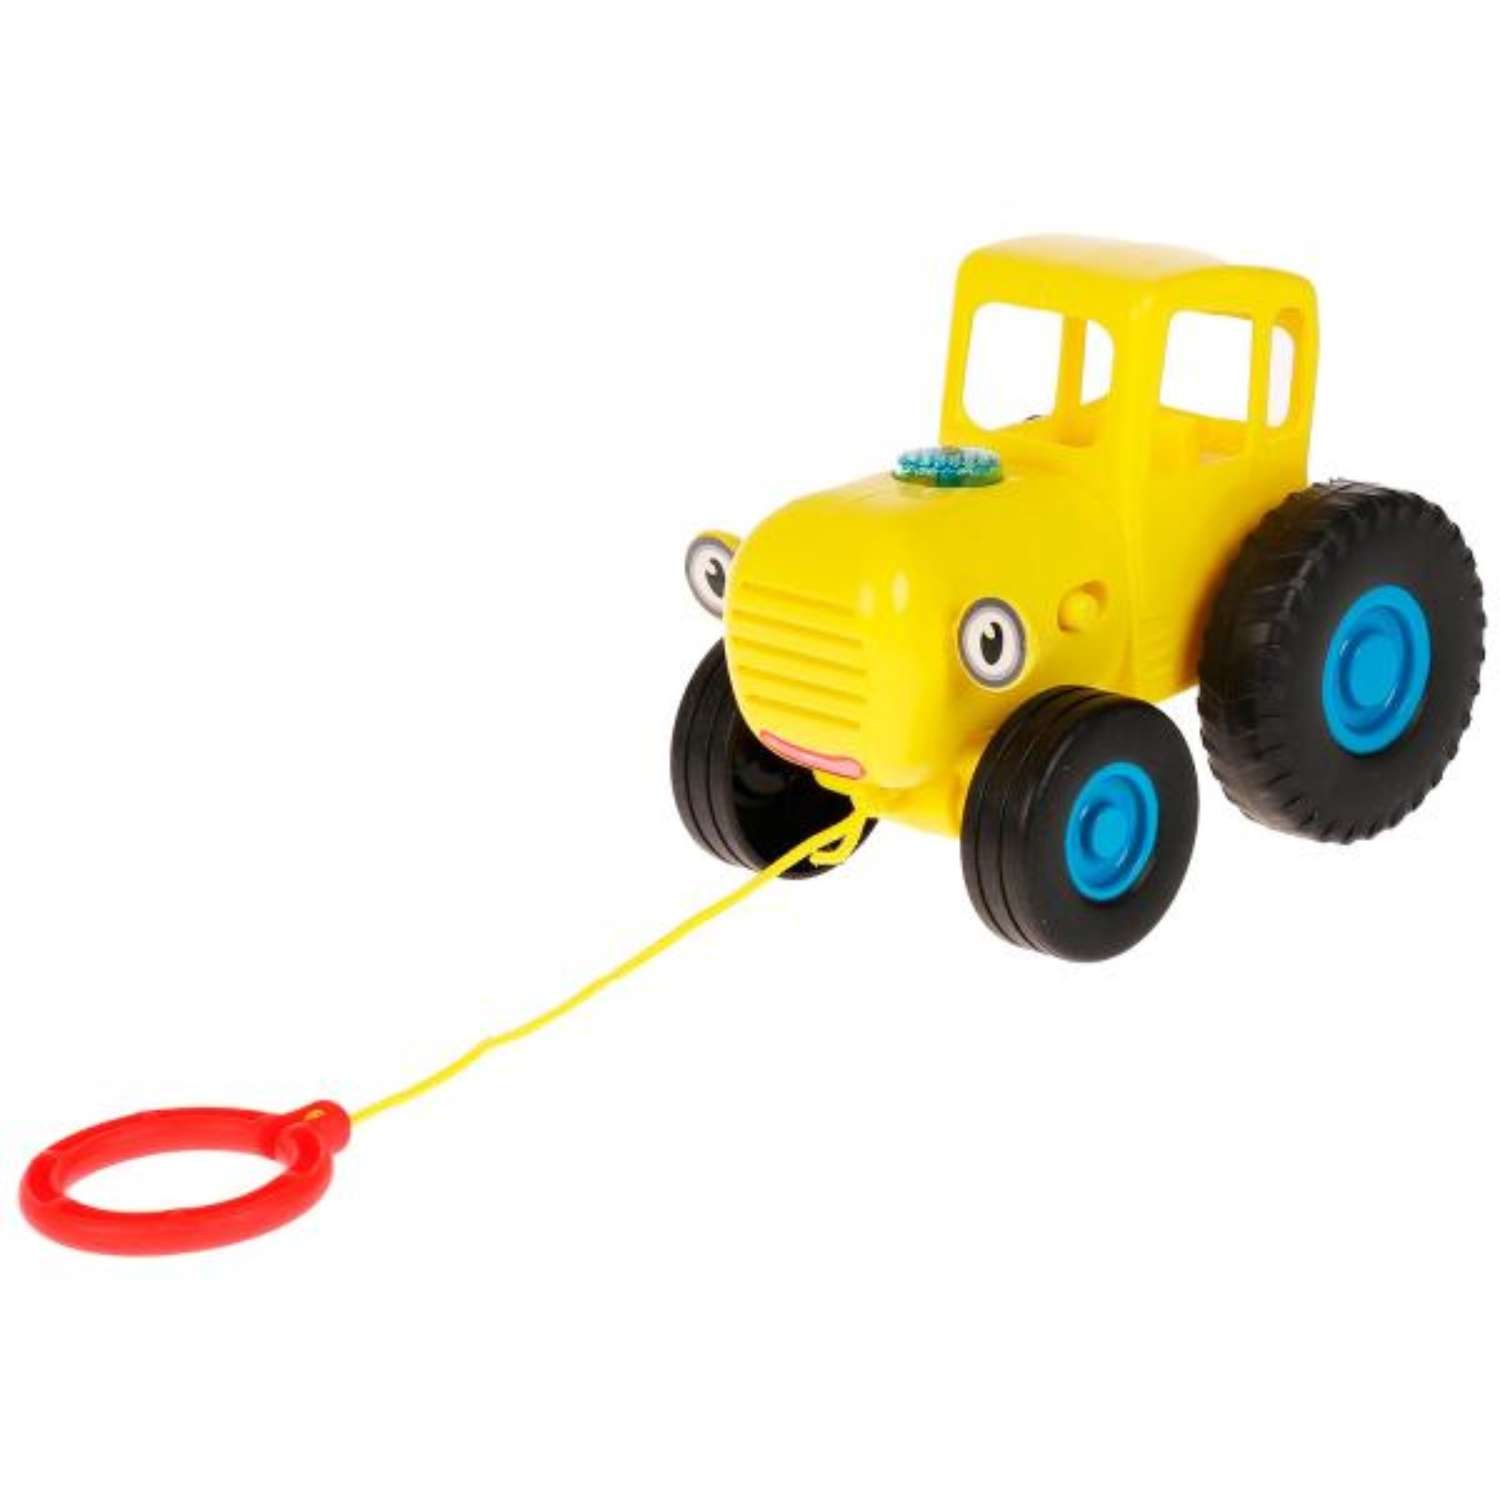 Музыкальная игрушка Zabiaka «Синий Трактор. Каталка» 30 песен загадок и звуков цвет желтый - фото 2